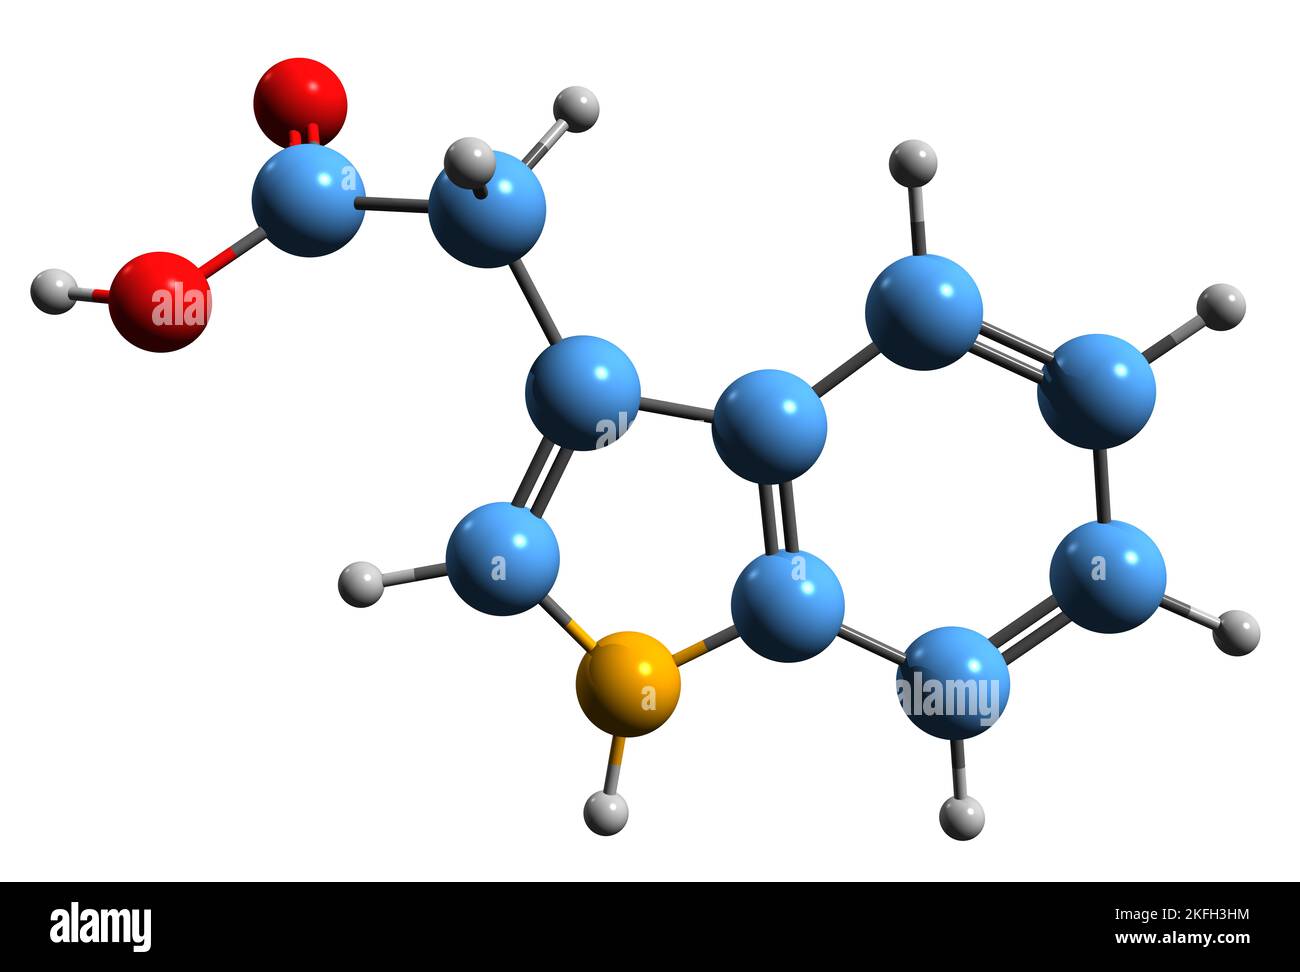 3D image de la formule squelettique de l'acide indole-3-acétique - structure chimique moléculaire de l'hormone végétale hétéroauxine isolée sur fond blanc Banque D'Images